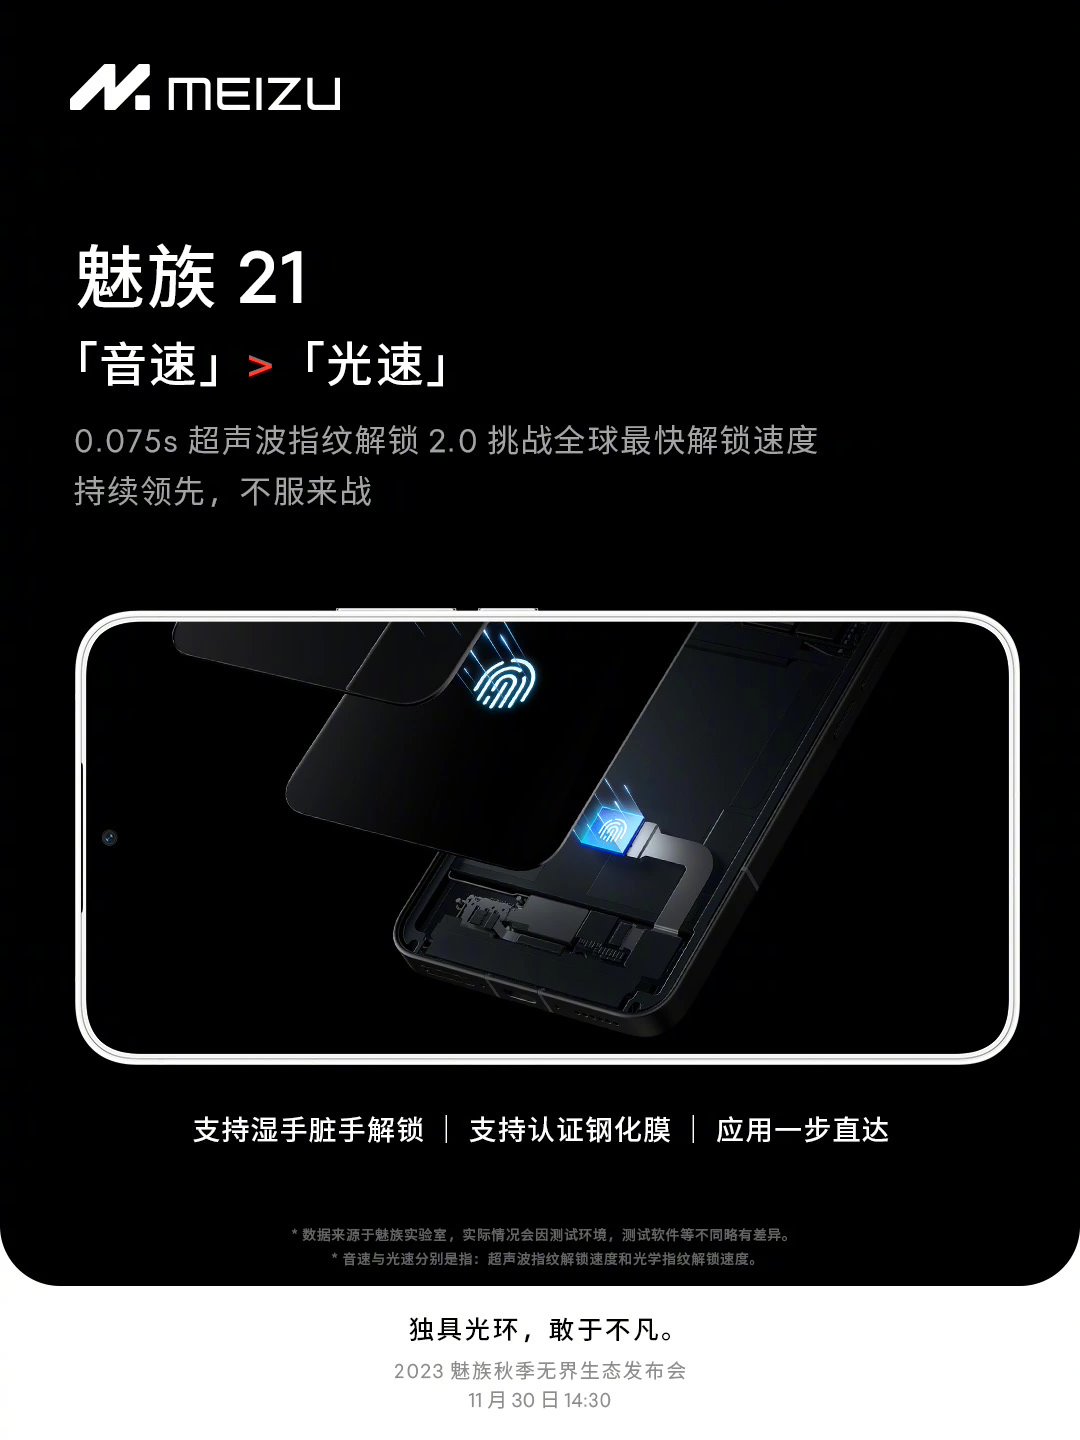 新标题：定制化魅族 21 专属手机膜，PANDAER 钢化膜即将推出，完美适应手机特性